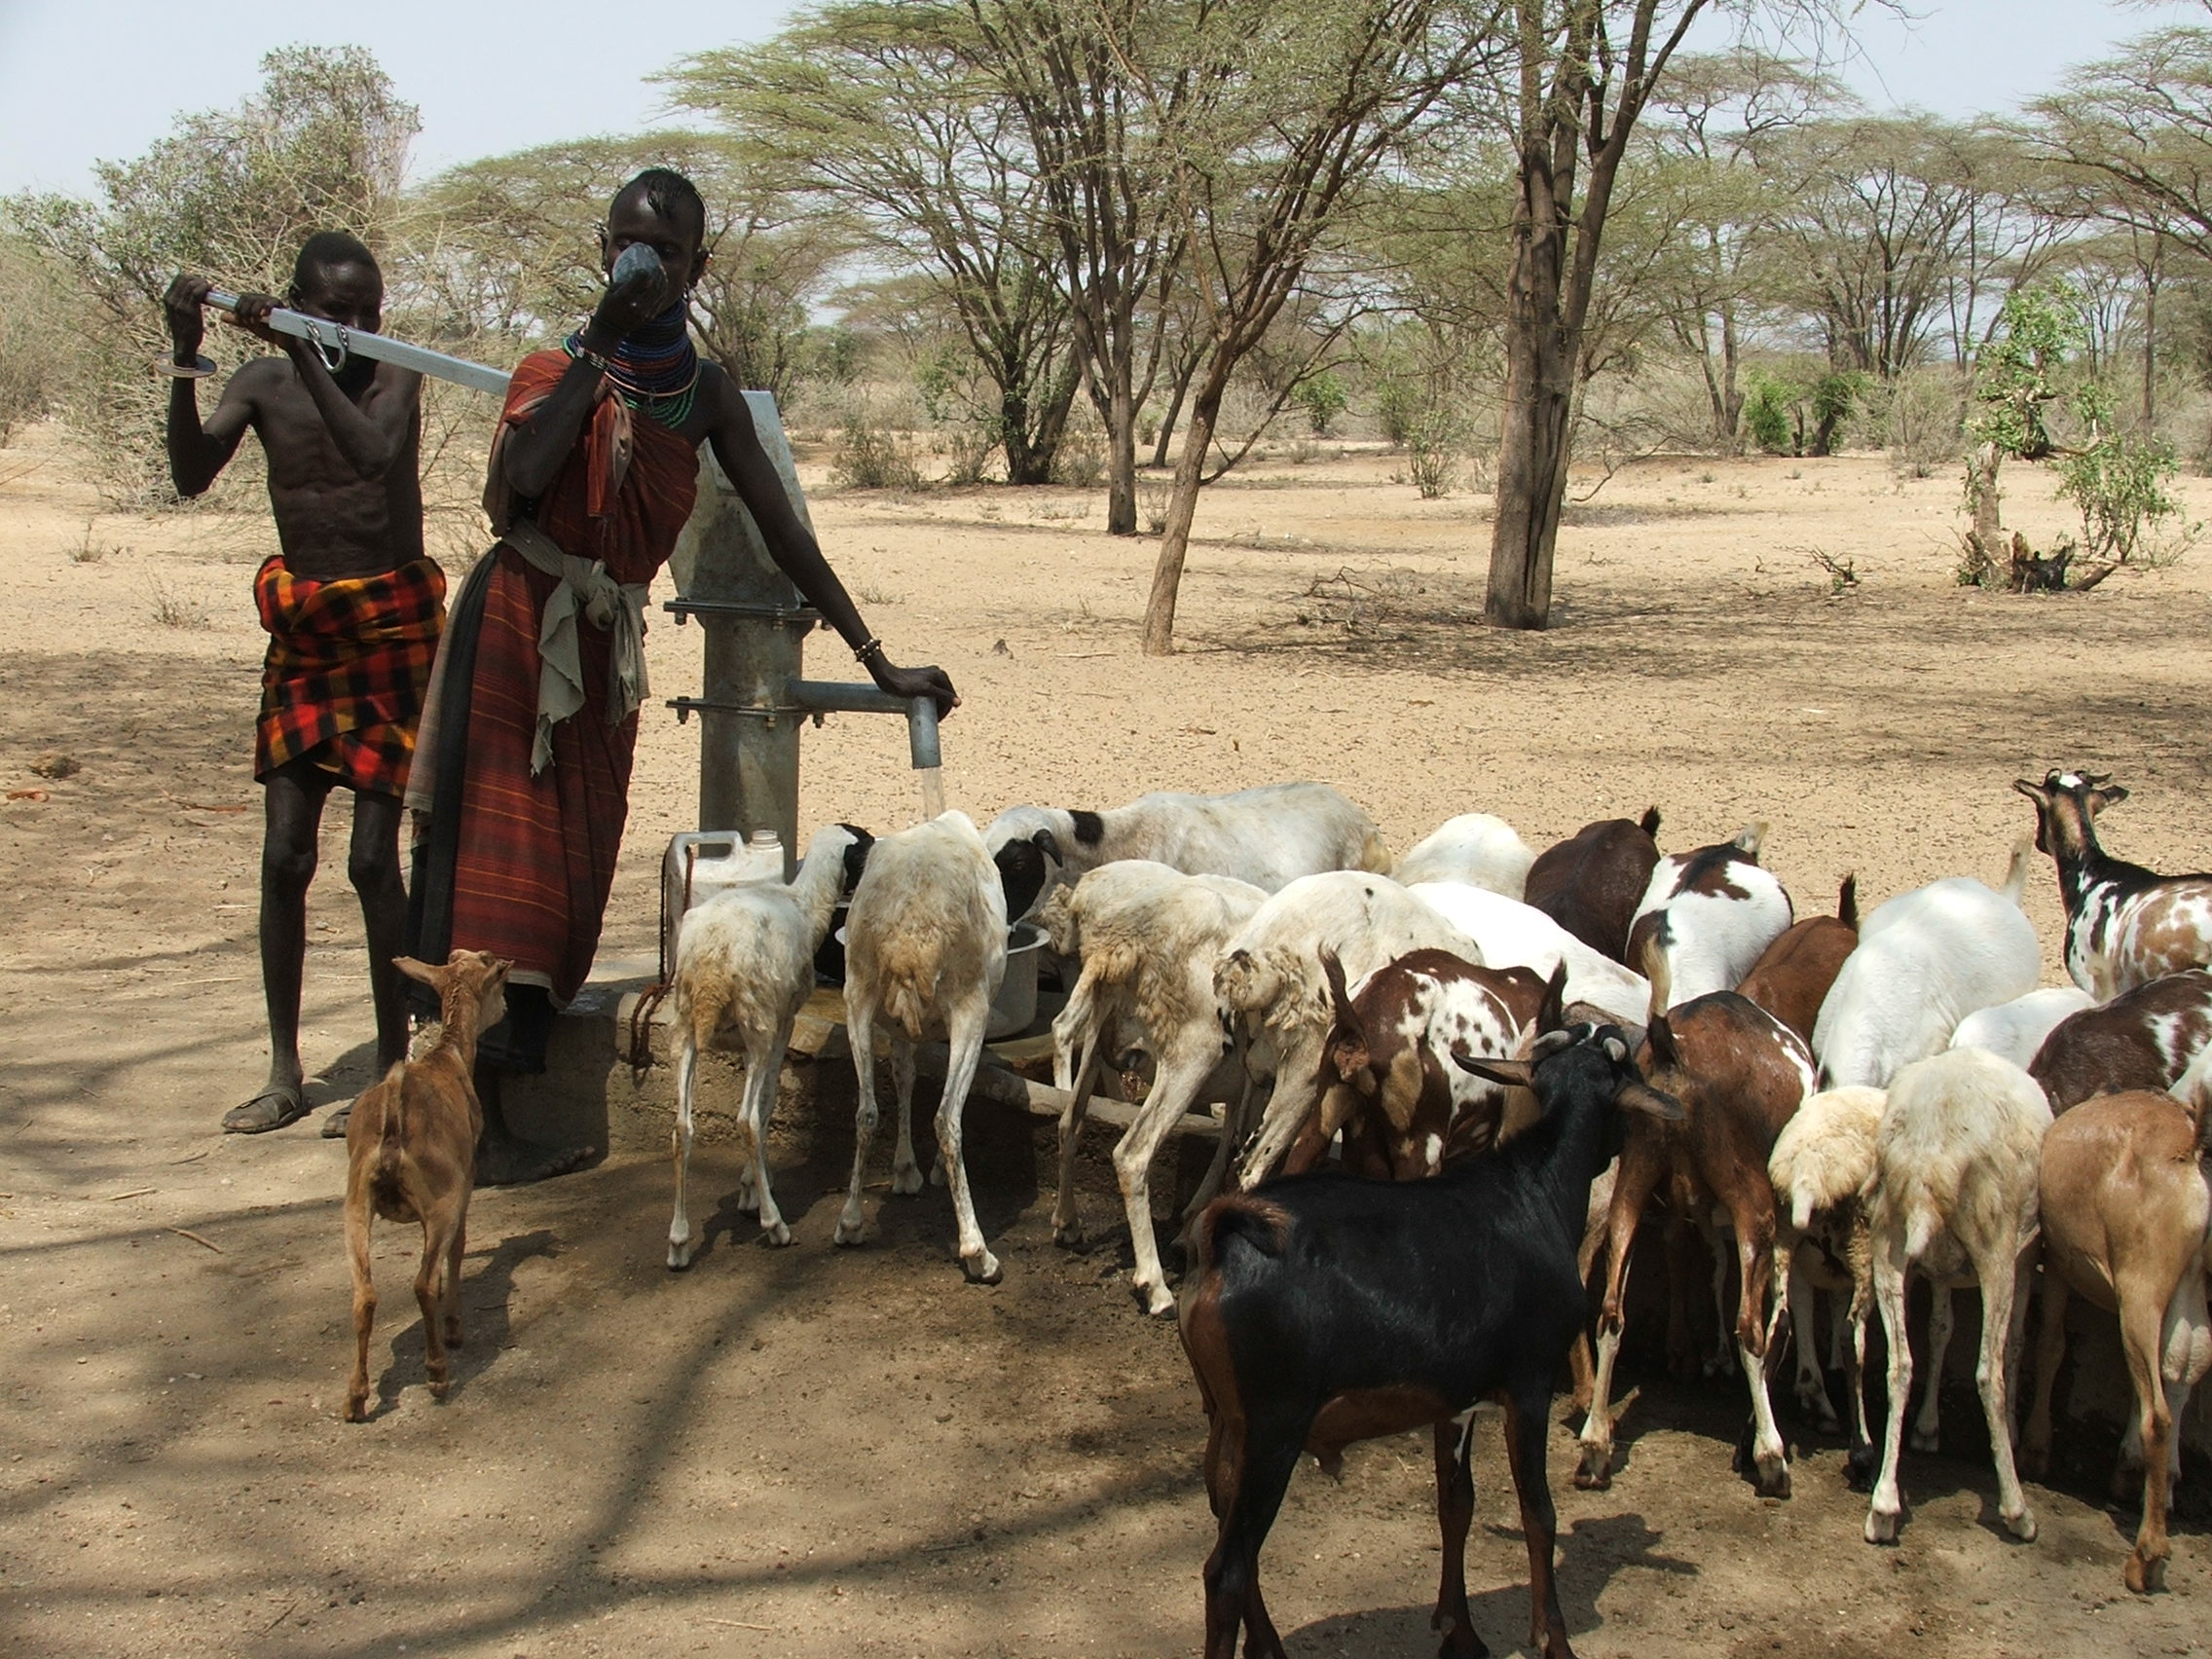 Turkana tending their cattle